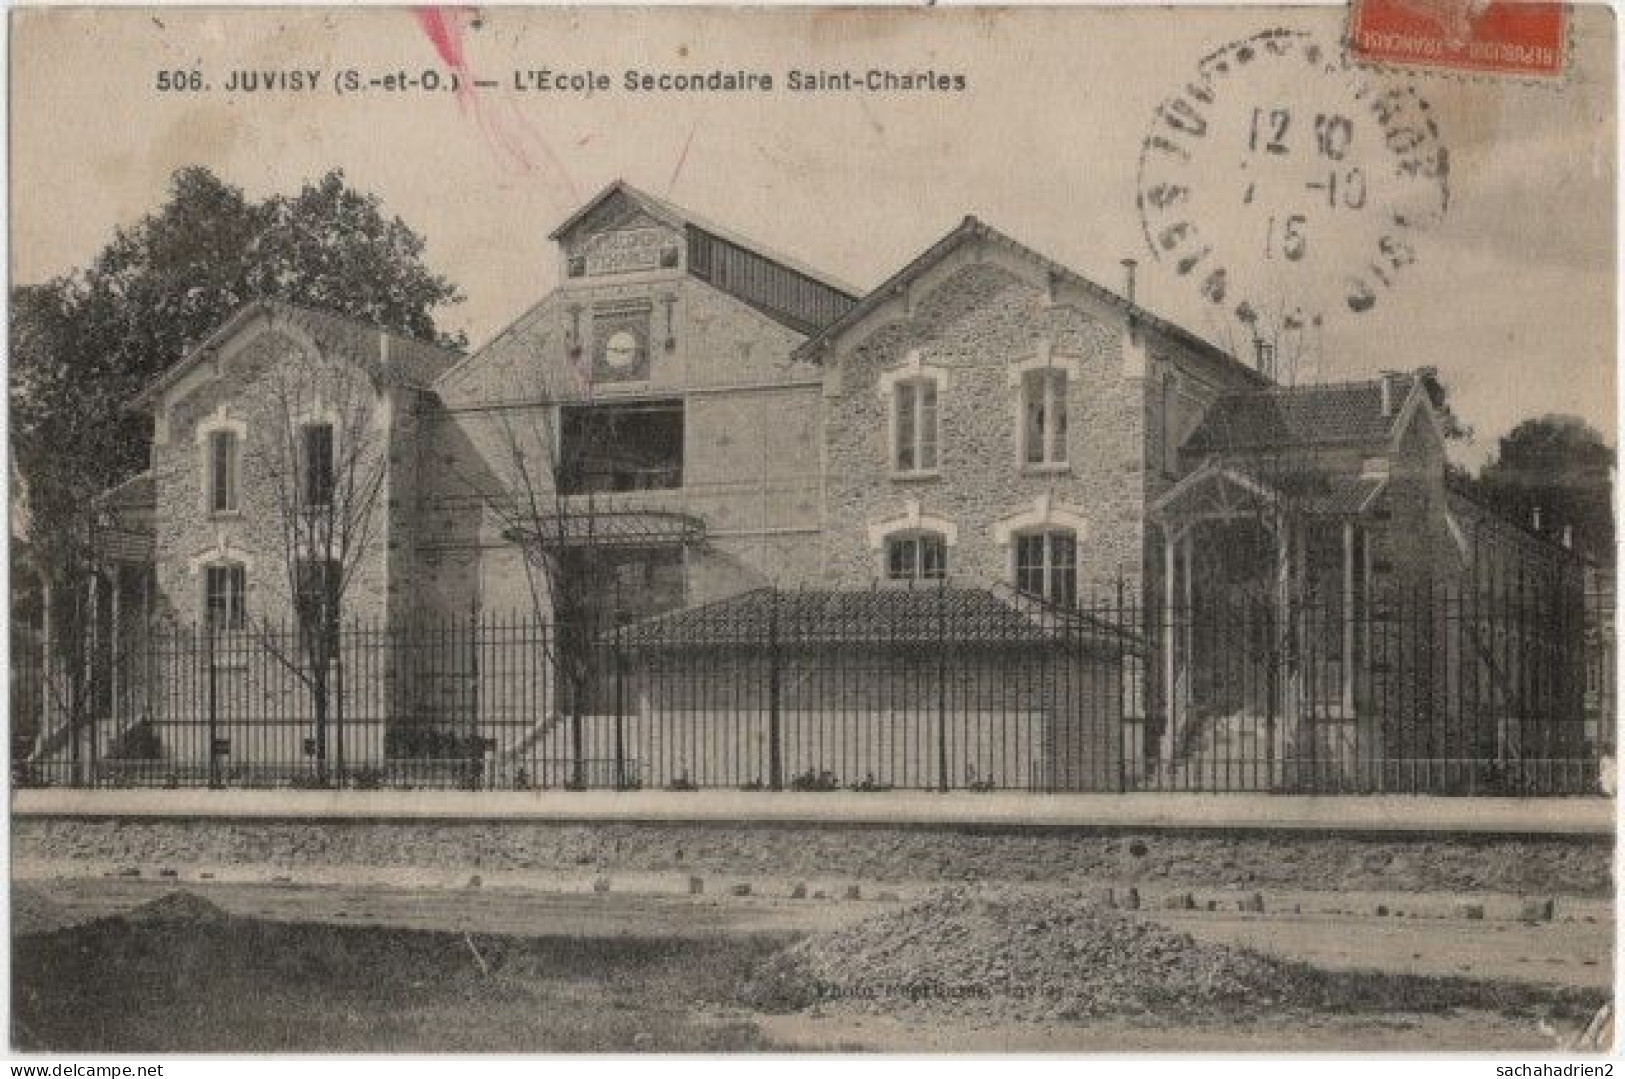 91. JUVISY. L'Ecole Secondaire Saint-Charles. 506 - Juvisy-sur-Orge